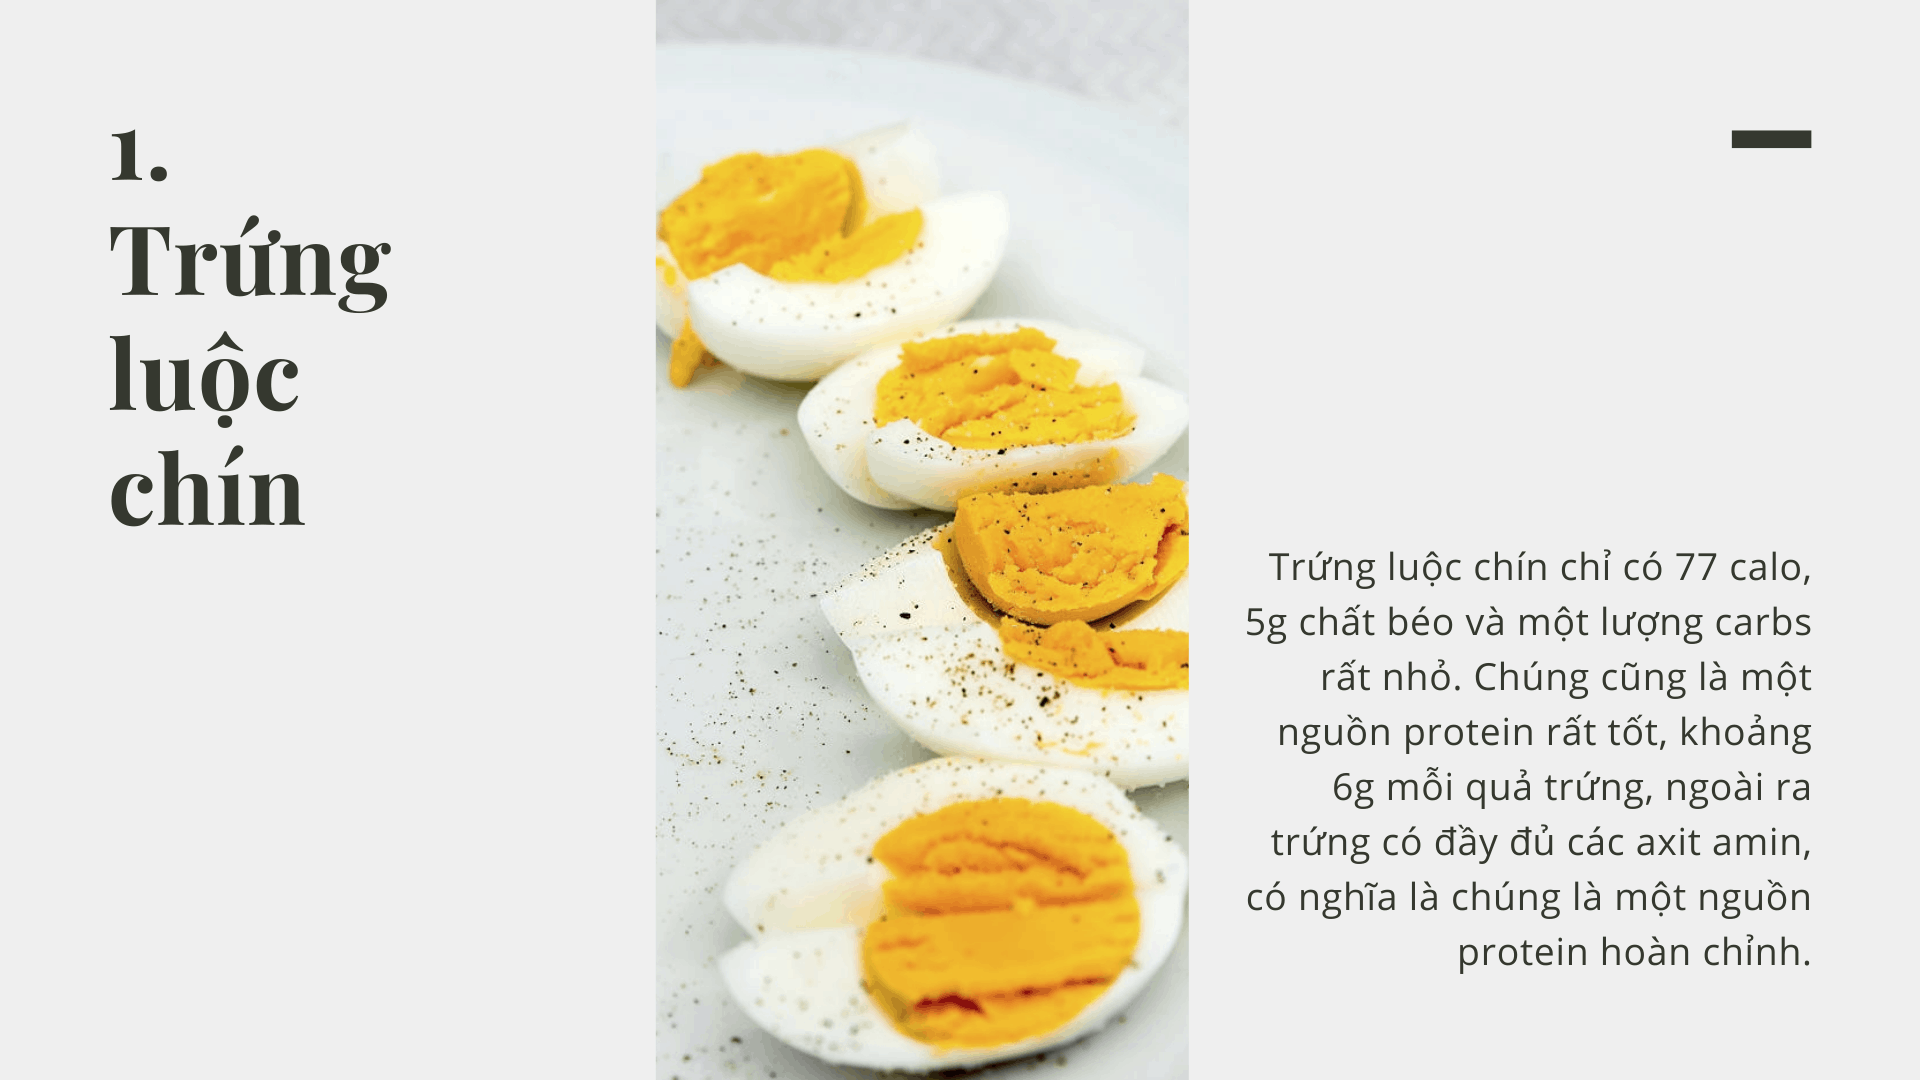 ăn trứng luộc chín giúp bạn giảm cân